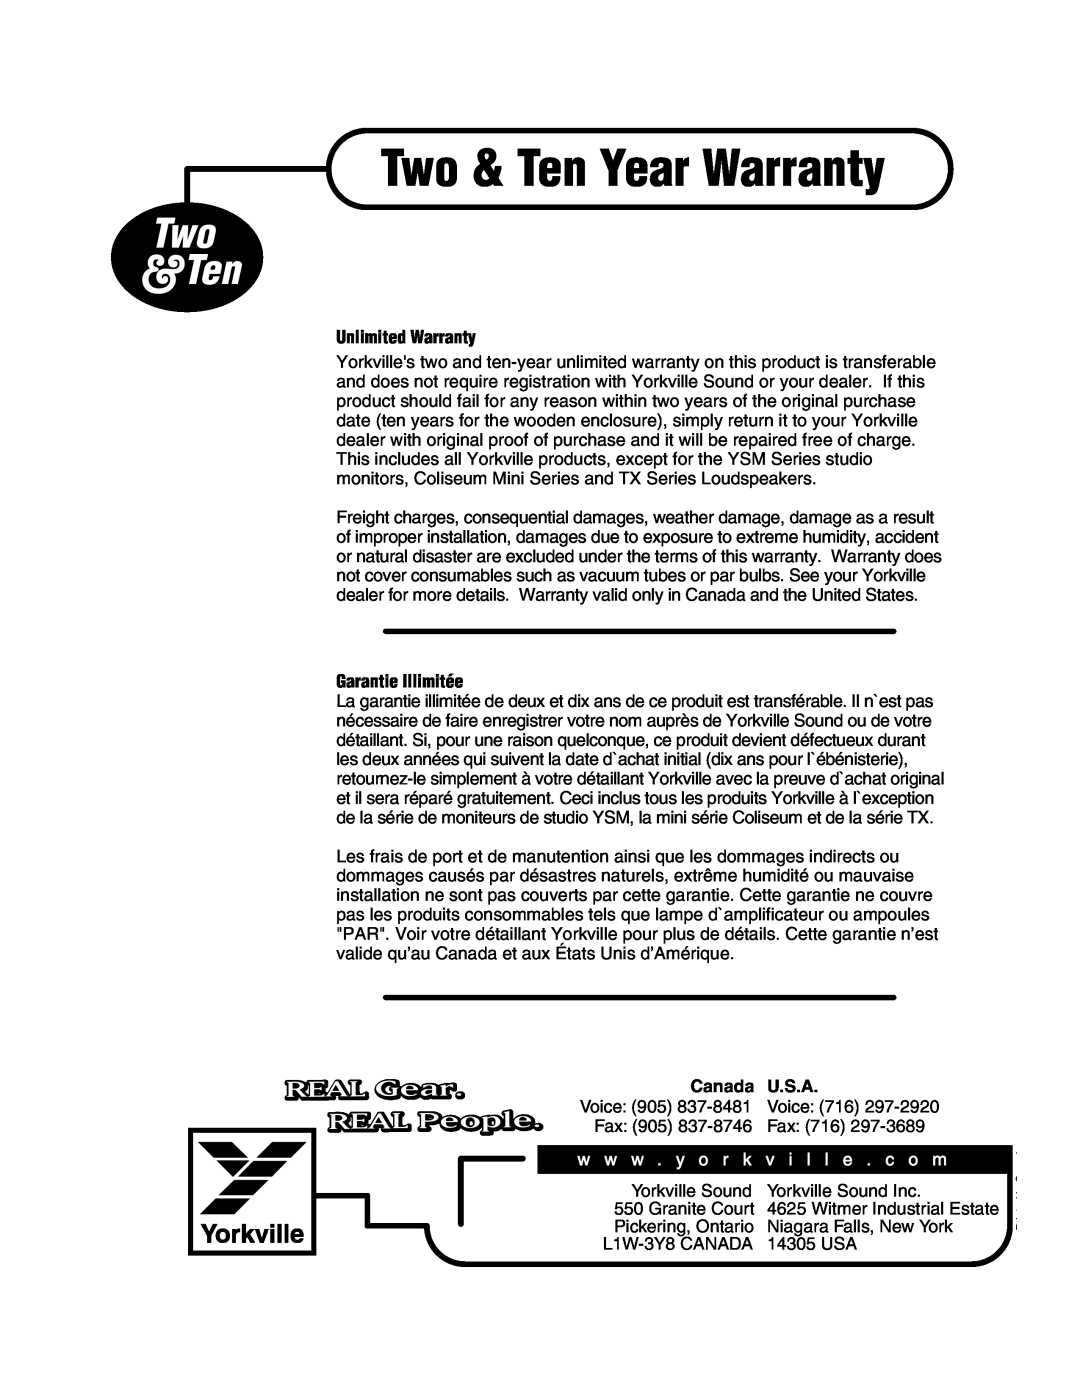 Yorkville Sound YS1031 Two & Ten Year Warranty, Two &Ten, REAL Gear, REAL People, Unlimited Warranty, Garantie Illimitée 